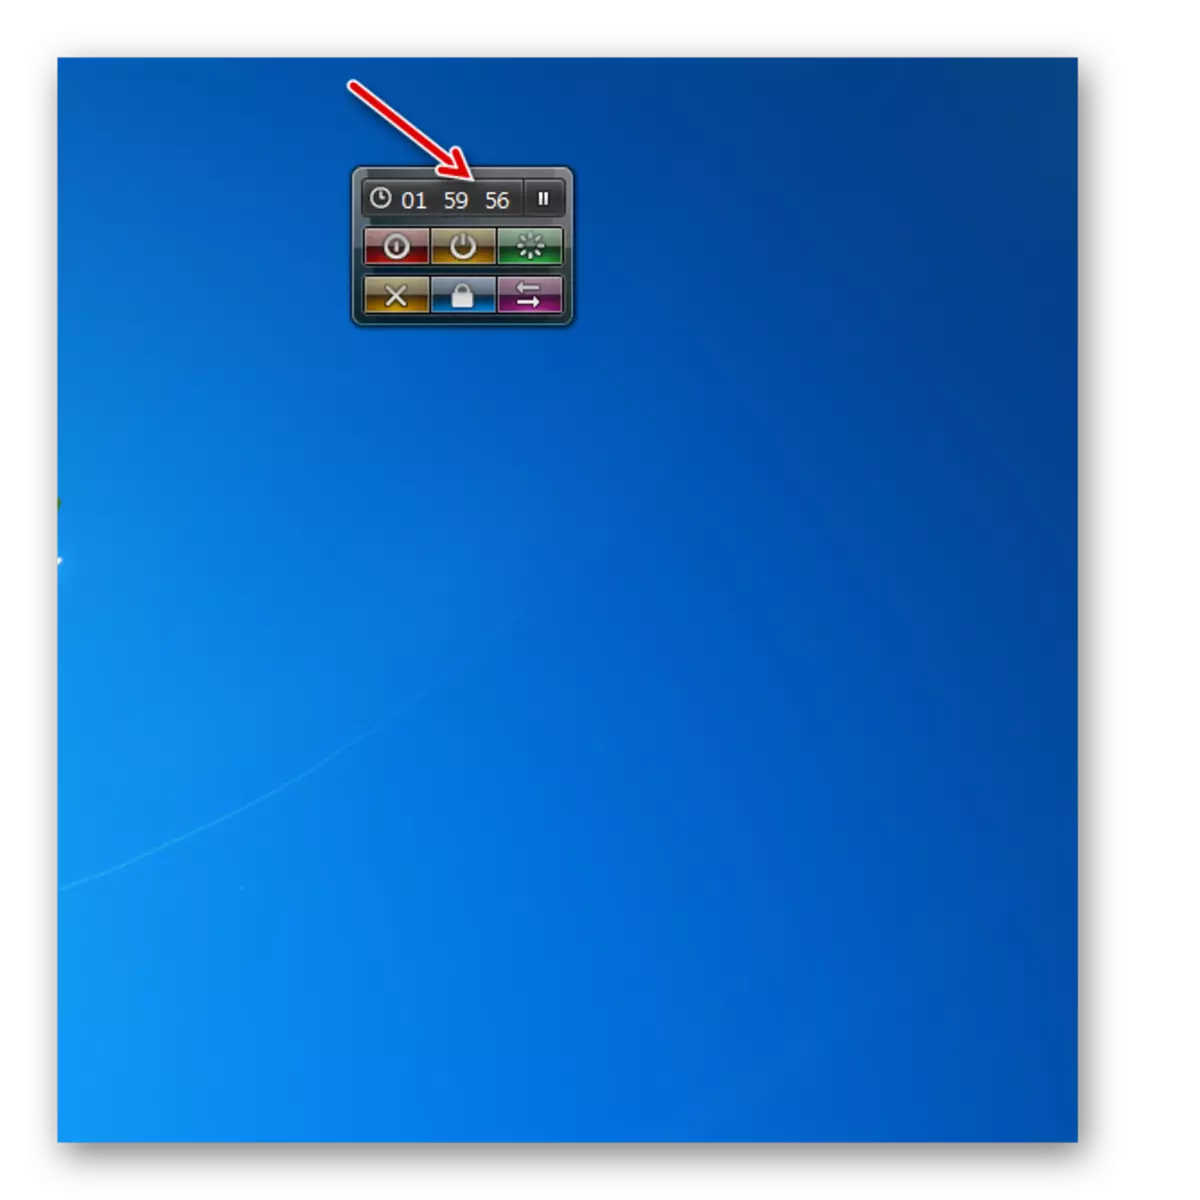 Windows 7-de ulgamyň öçürilen enjamynda kompýuter togtadylan ýükleýjisi